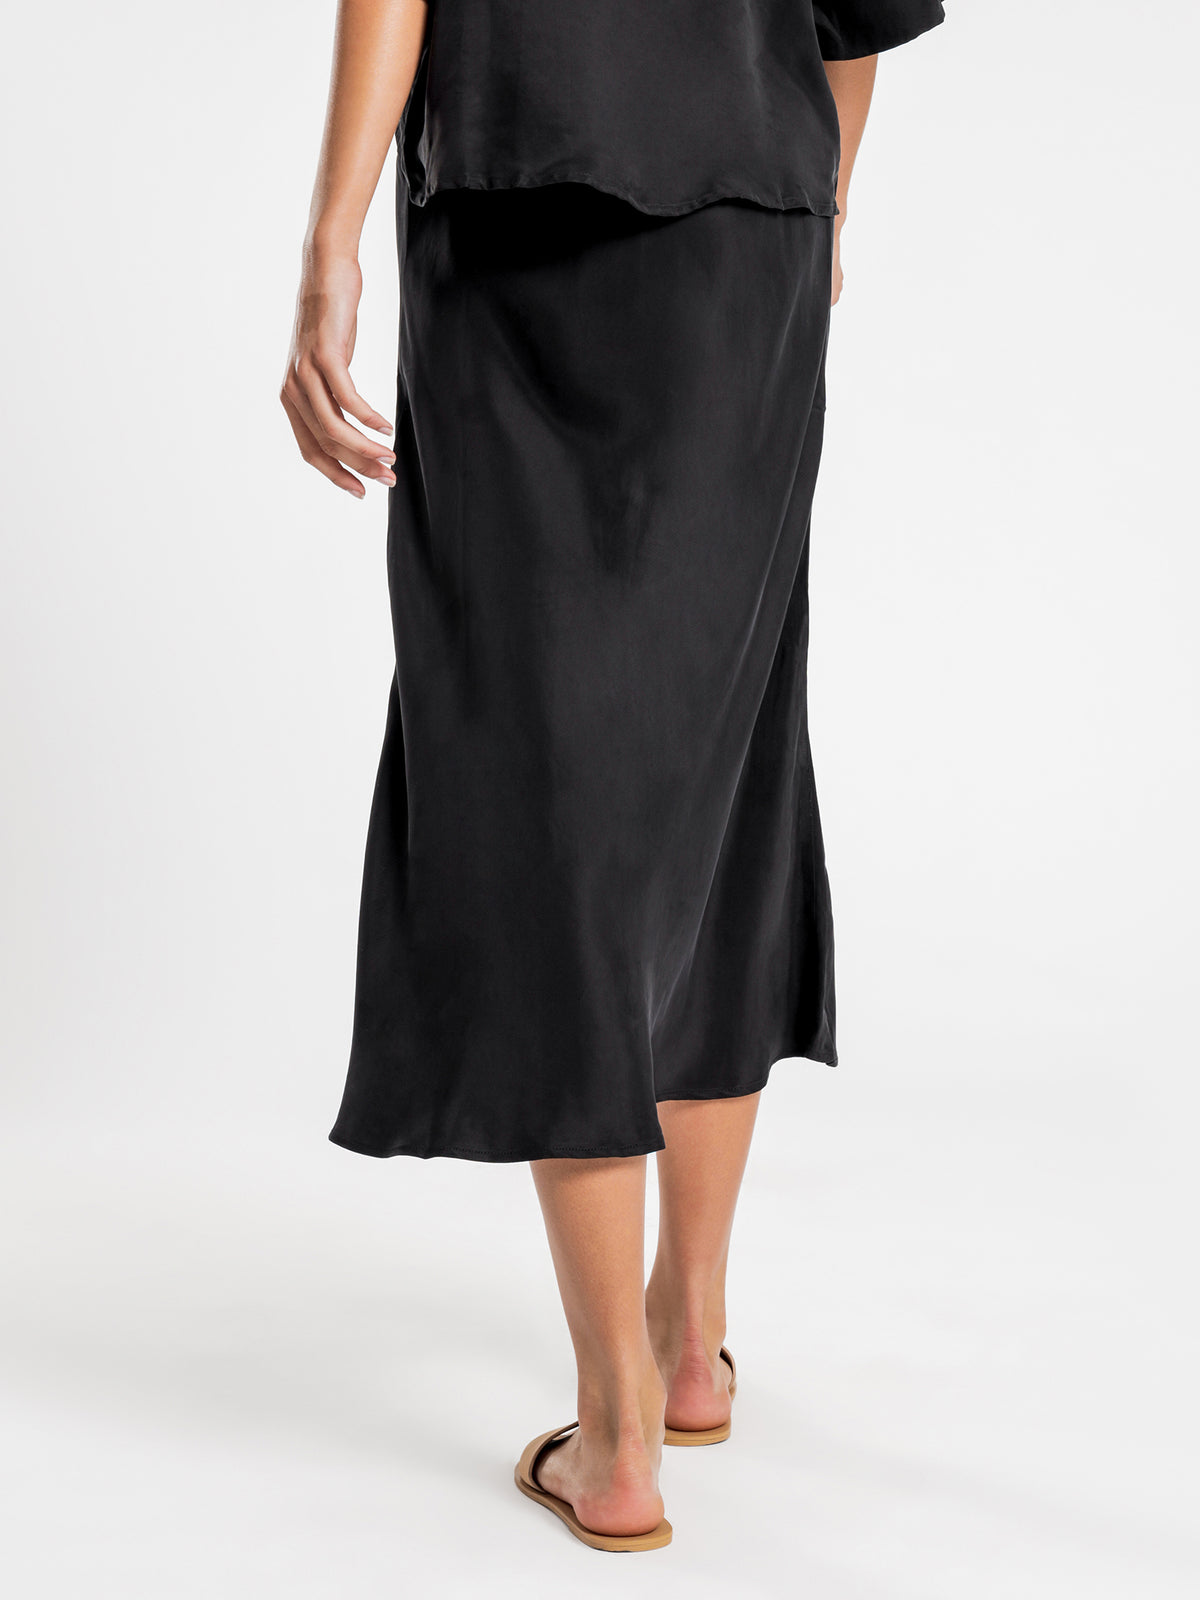 Esme Cupro Midi Skirt in Black